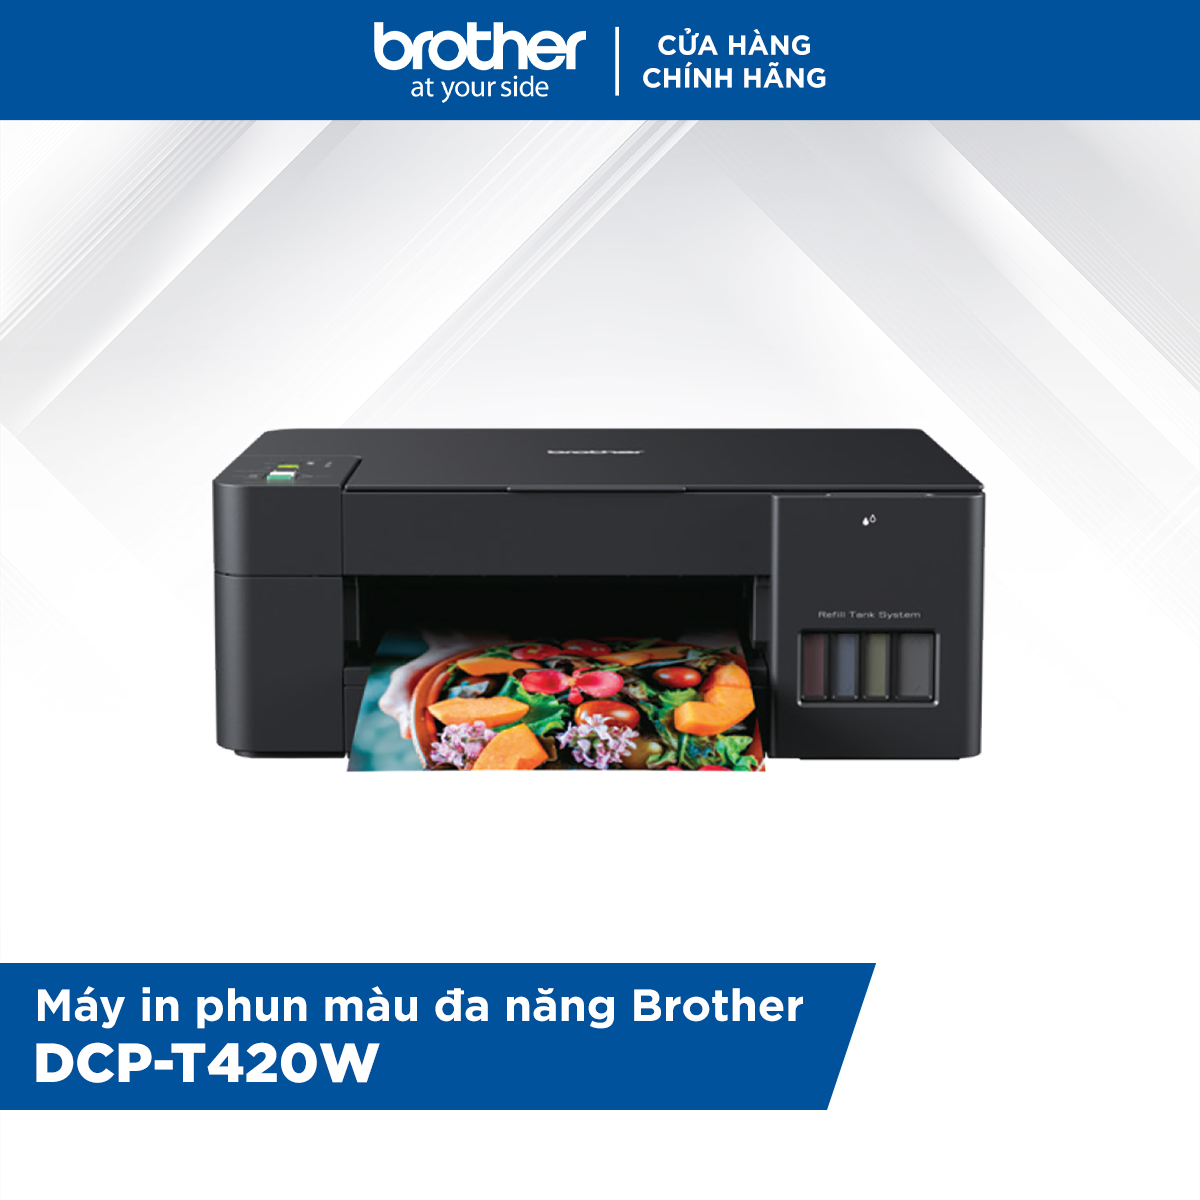 [HÀNG CHÍNH HÃNG] Combo Máy in phun màu đa năng Brother DCP-T420W và Bộ mực in phun Brother (BT-D60BK + BT5000C/M/Y)